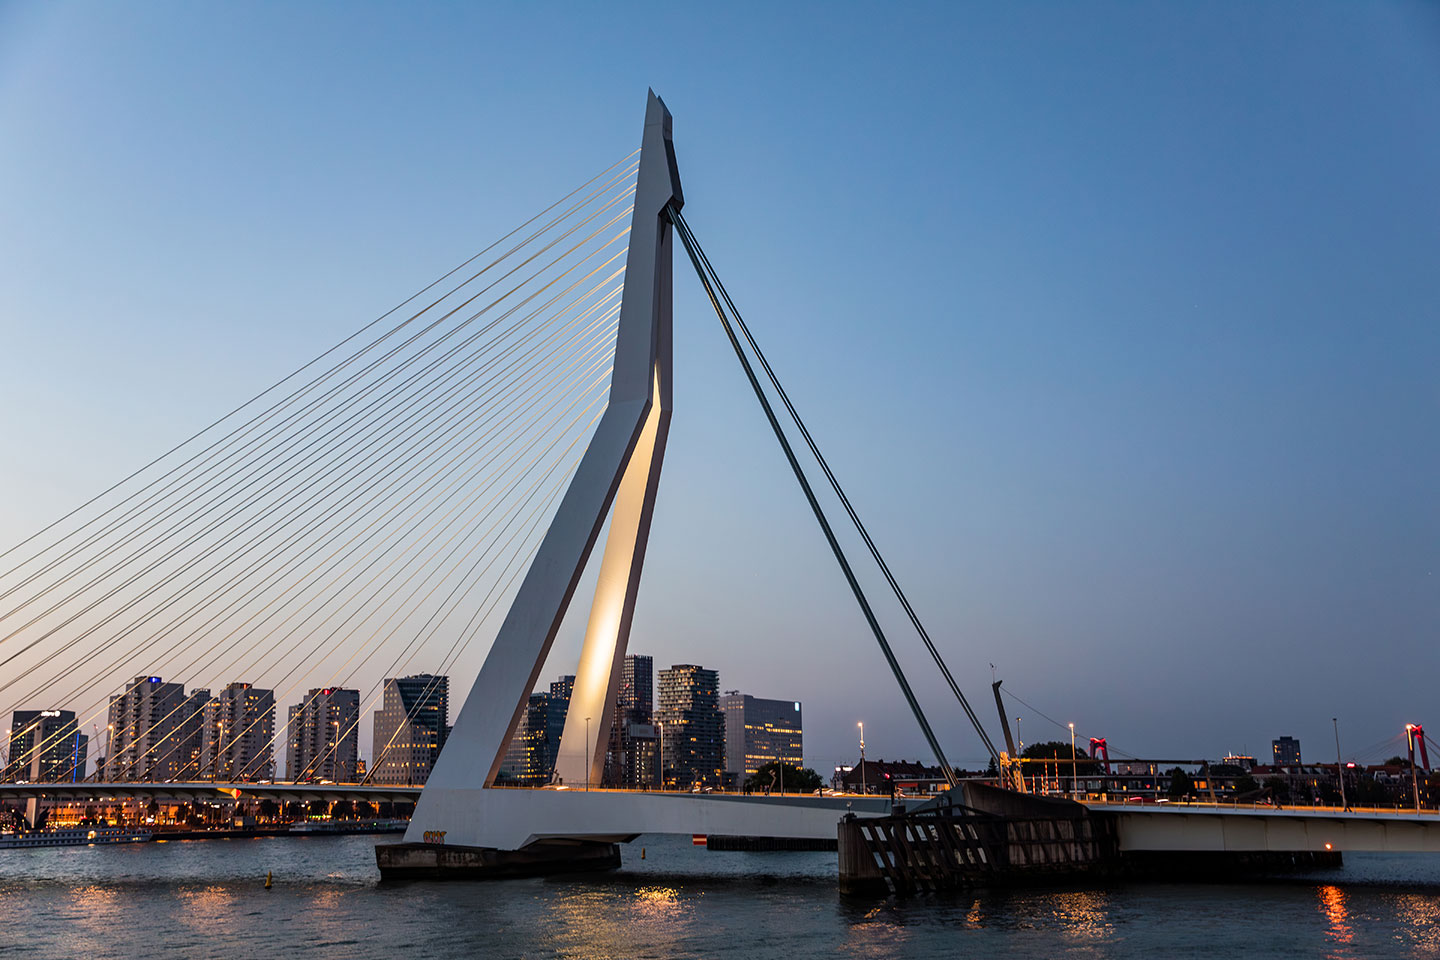 Trouwen bij de Erasmusbrug in Rotterdam